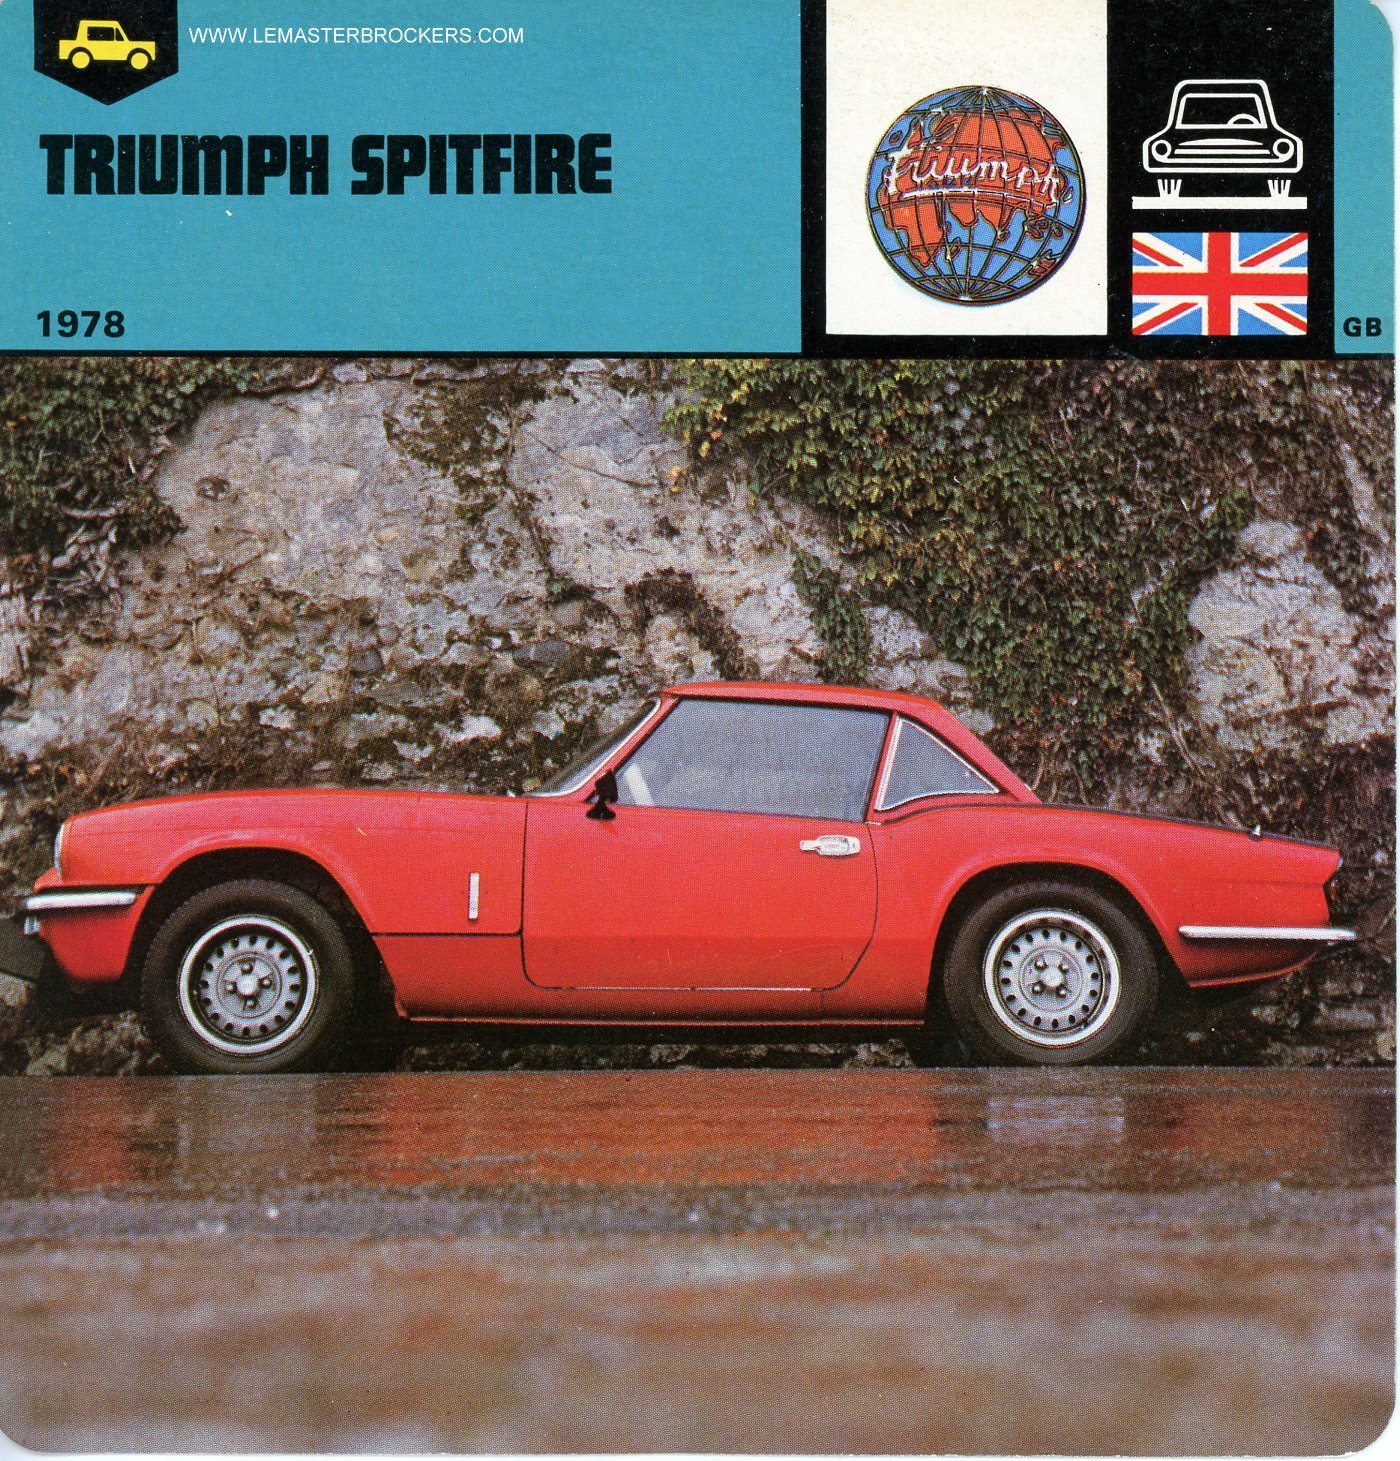 FICHE TRIUMPH SPITFIRE 1978